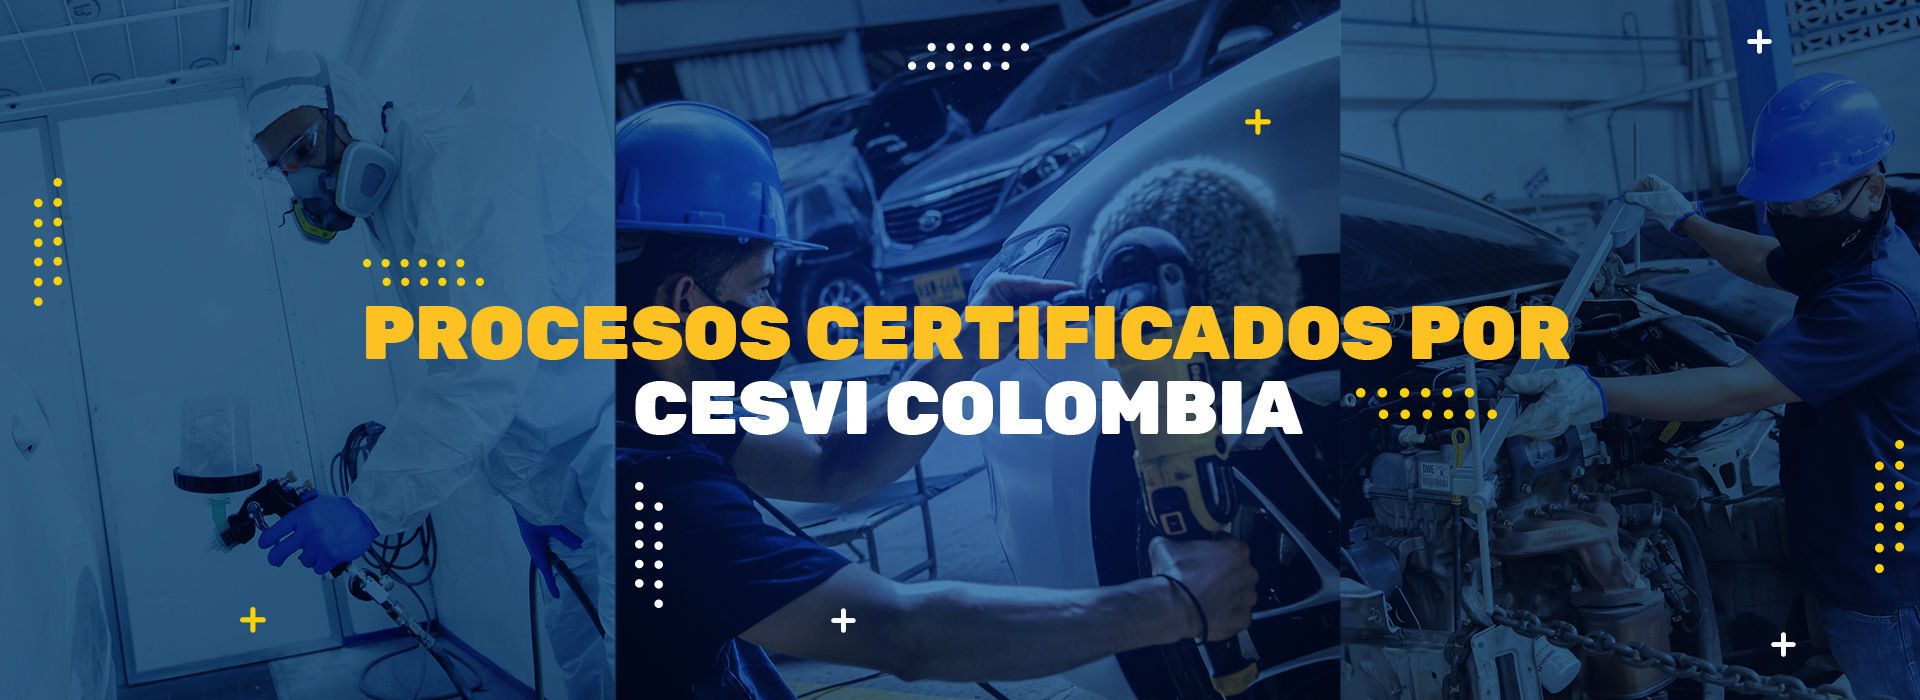 Procesos certificados por Cesvi Colombia